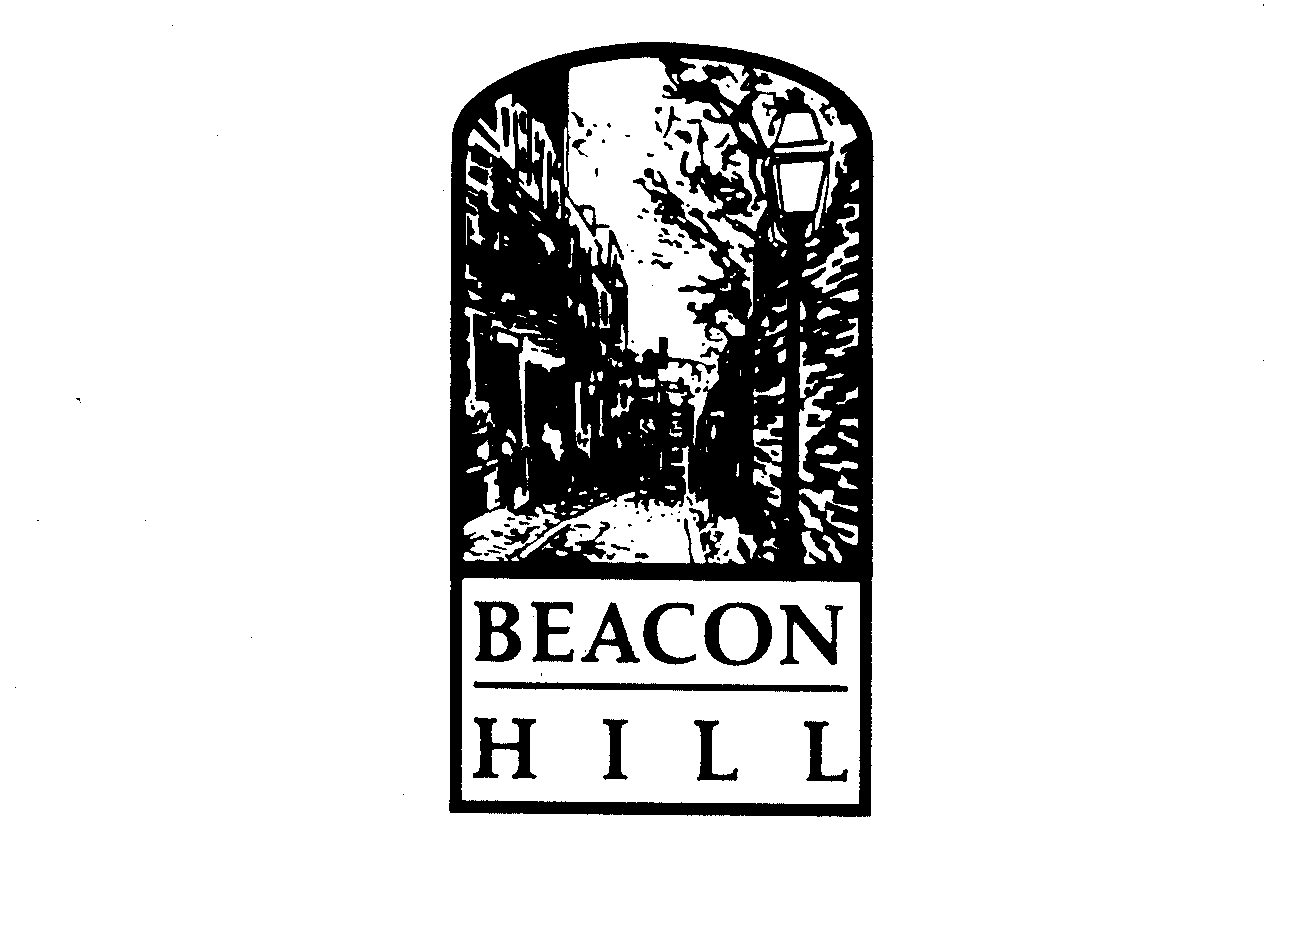  BEACON HILL